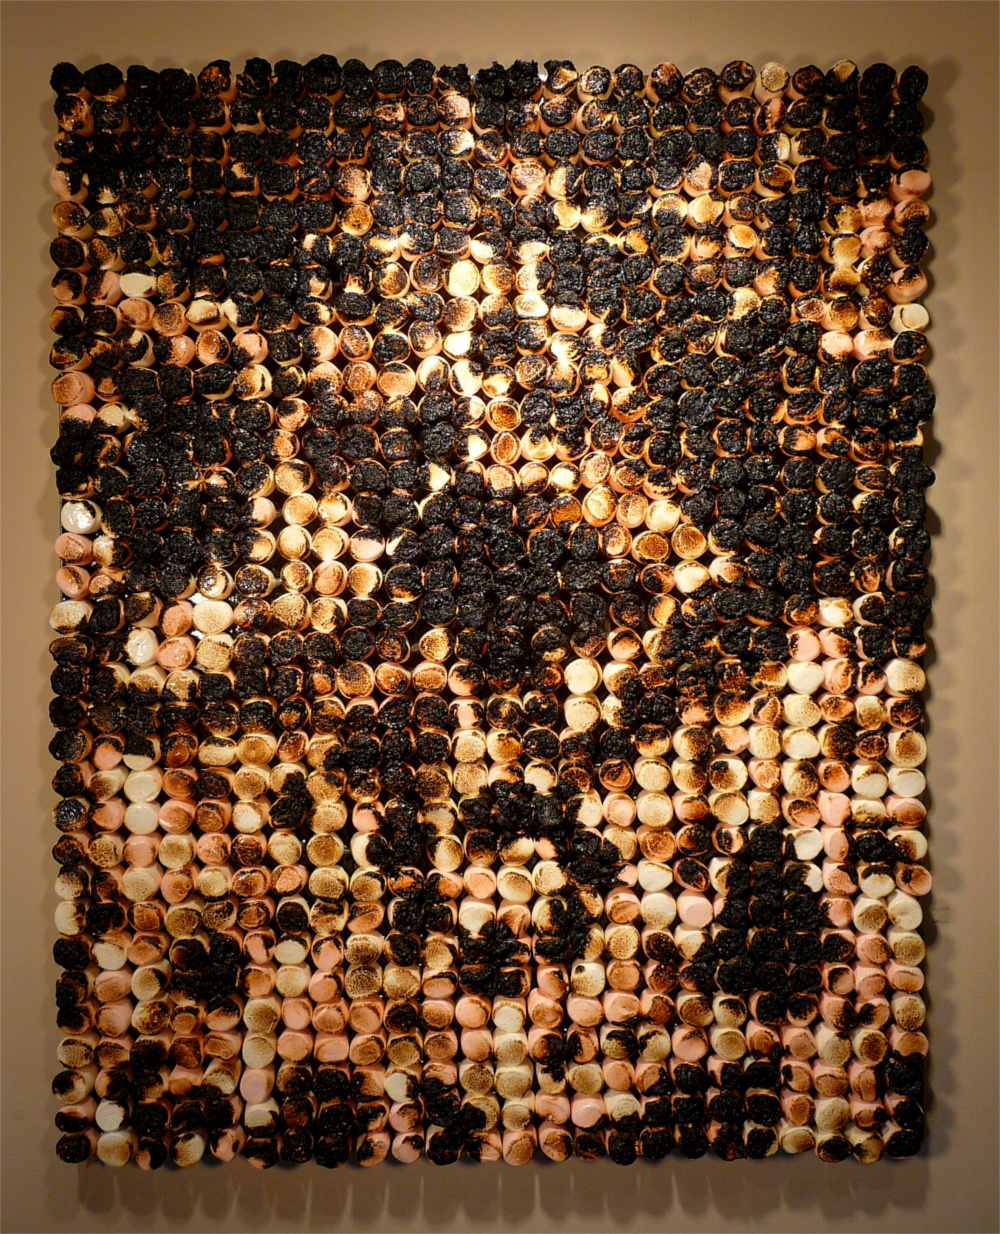   Snapcrunch! , 2010  32” x 40”, mixed media on canvas  NFS 